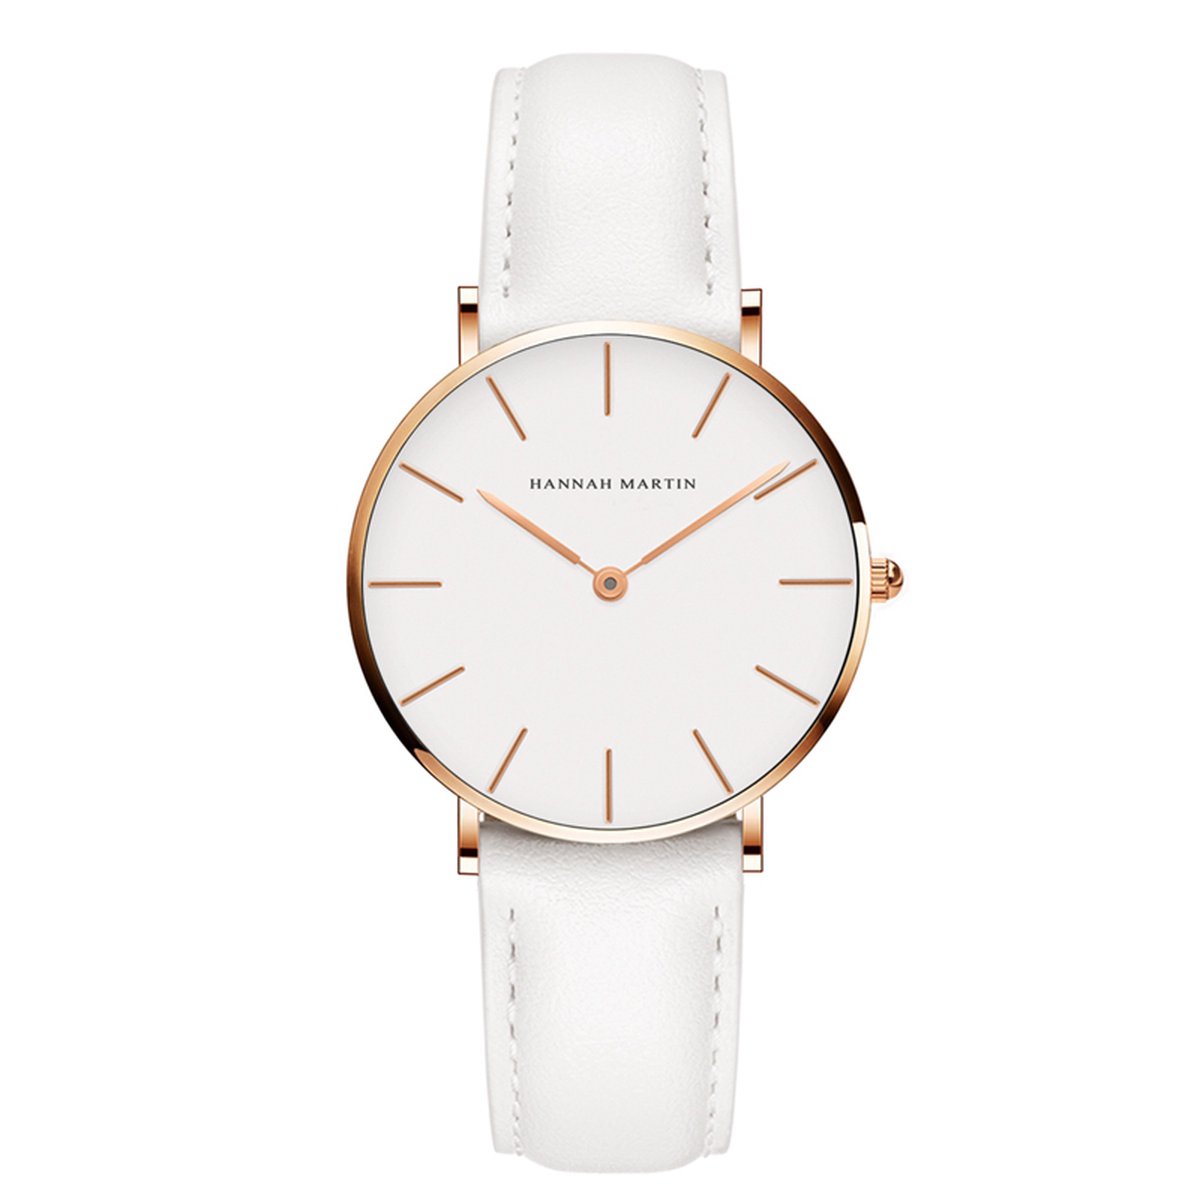 HANNAH MARTIN horloge met witte lederen polsband, witte wijzerplaat, gouden horlogekast en gouden wijzers voor dames met stijl ( model CB36 FB )